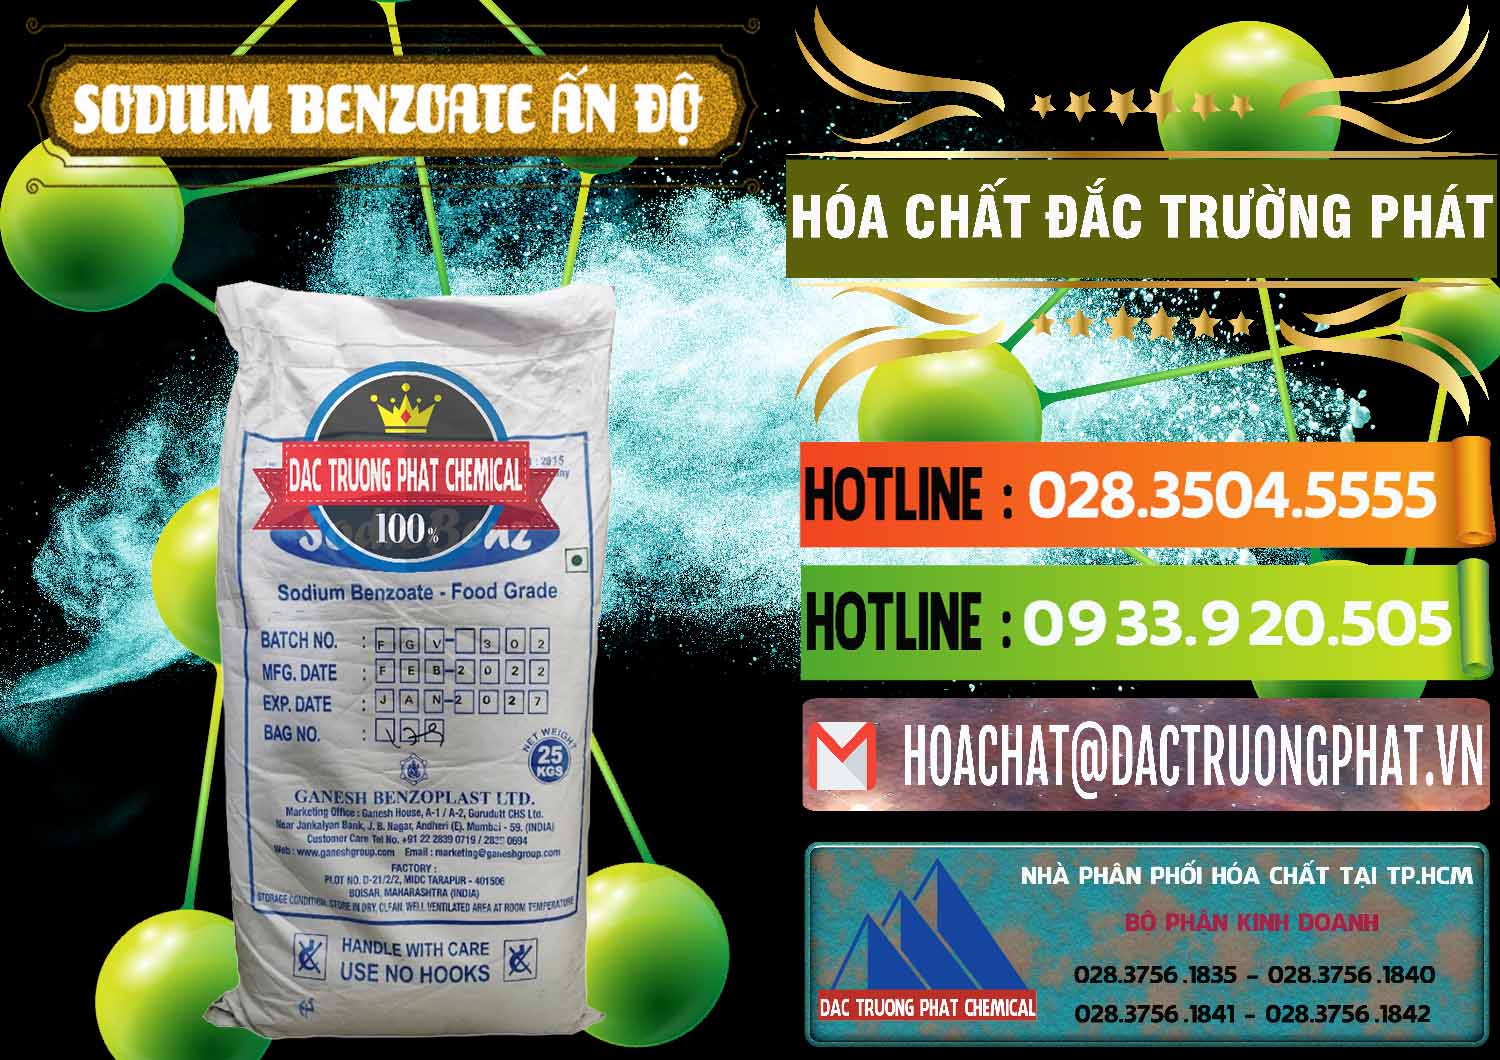 Công ty kinh doanh - bán Sodium Benzoate - Mốc Bột Ấn Độ India - 0361 - Chuyên kinh doanh và cung cấp hóa chất tại TP.HCM - cungcaphoachat.com.vn